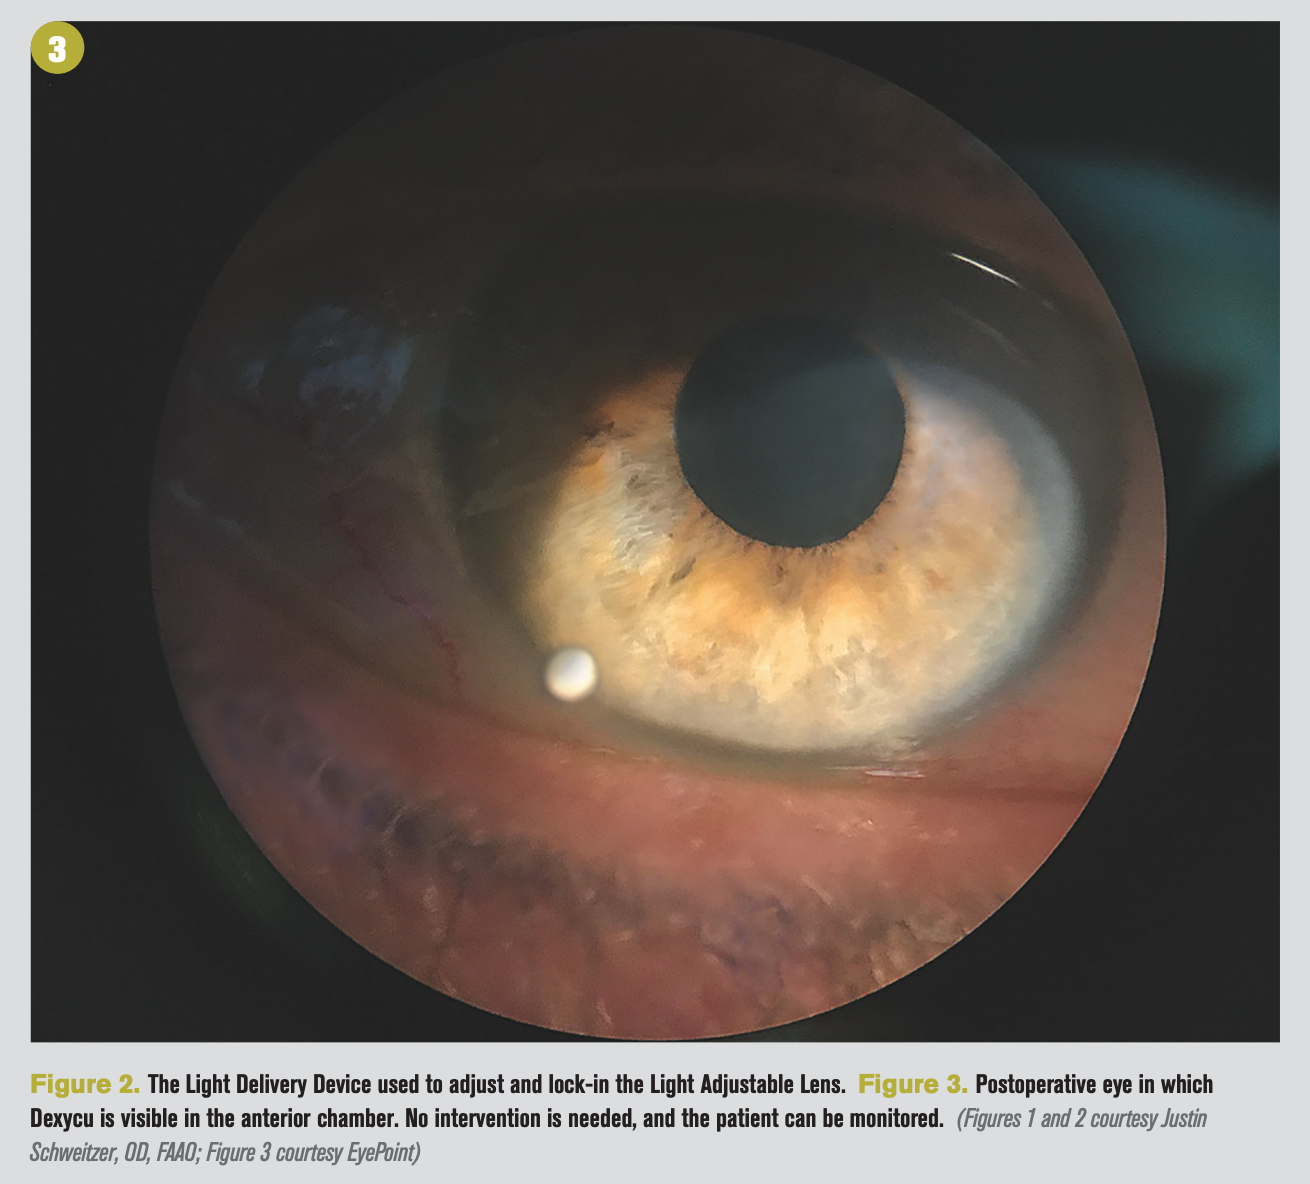 Cataract surgery 2020 update